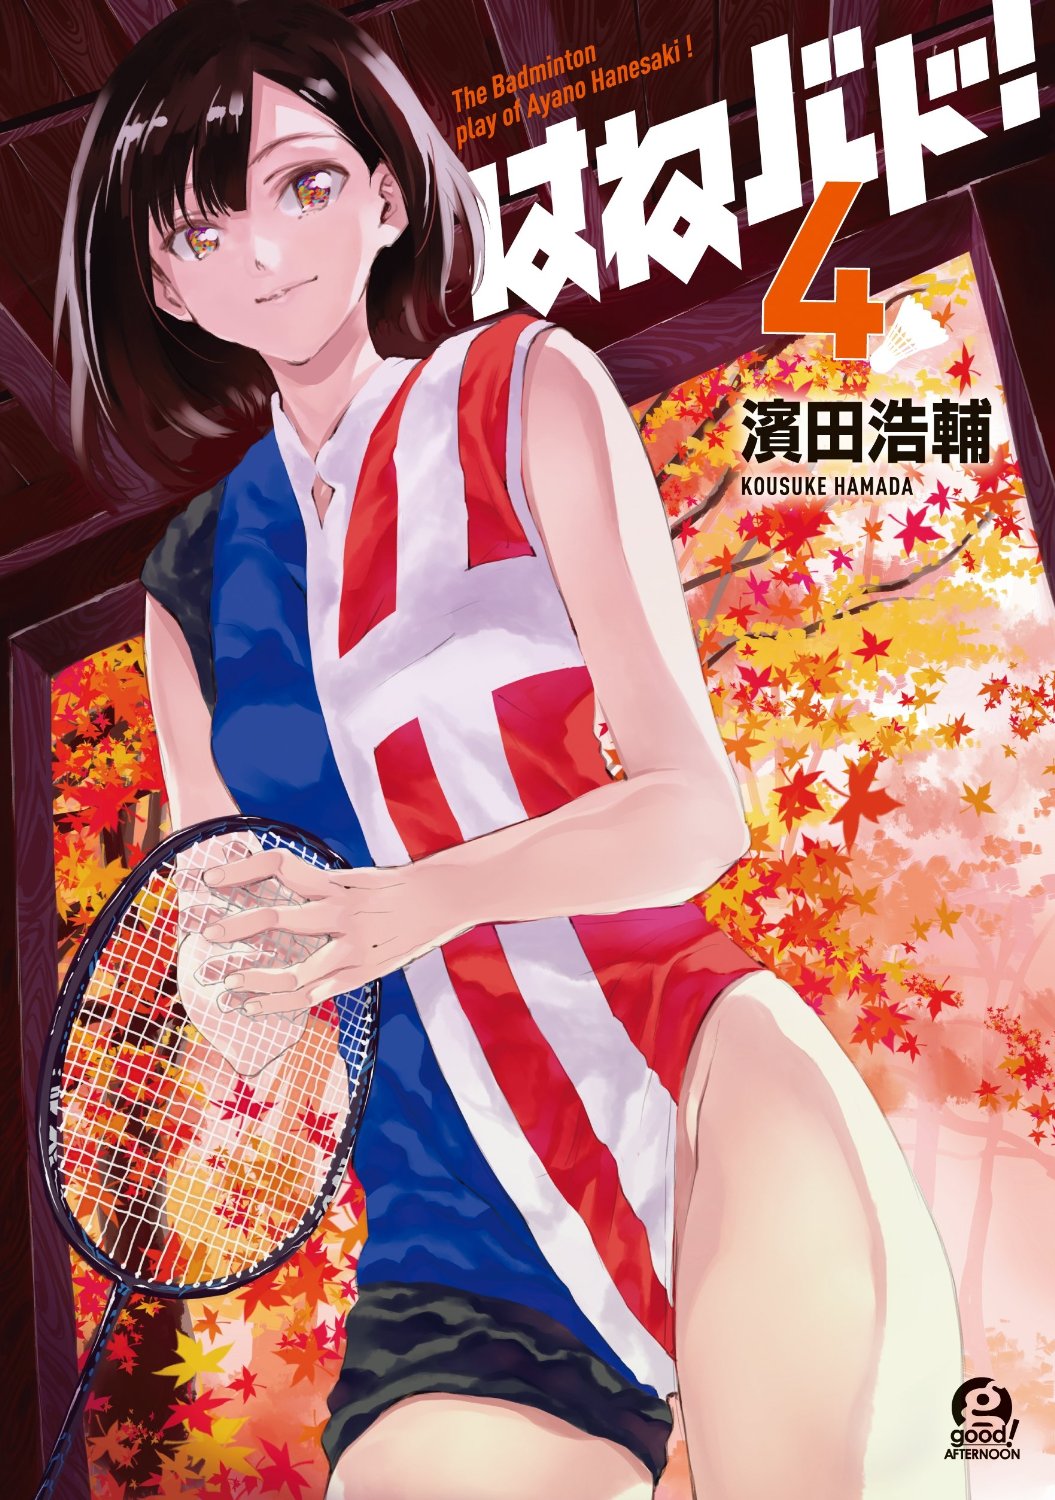 良書網 はねバド! The Badminton play of Ayano Hanesaki! 4 出版社: 講談社 Code/ISBN: 9784063880083